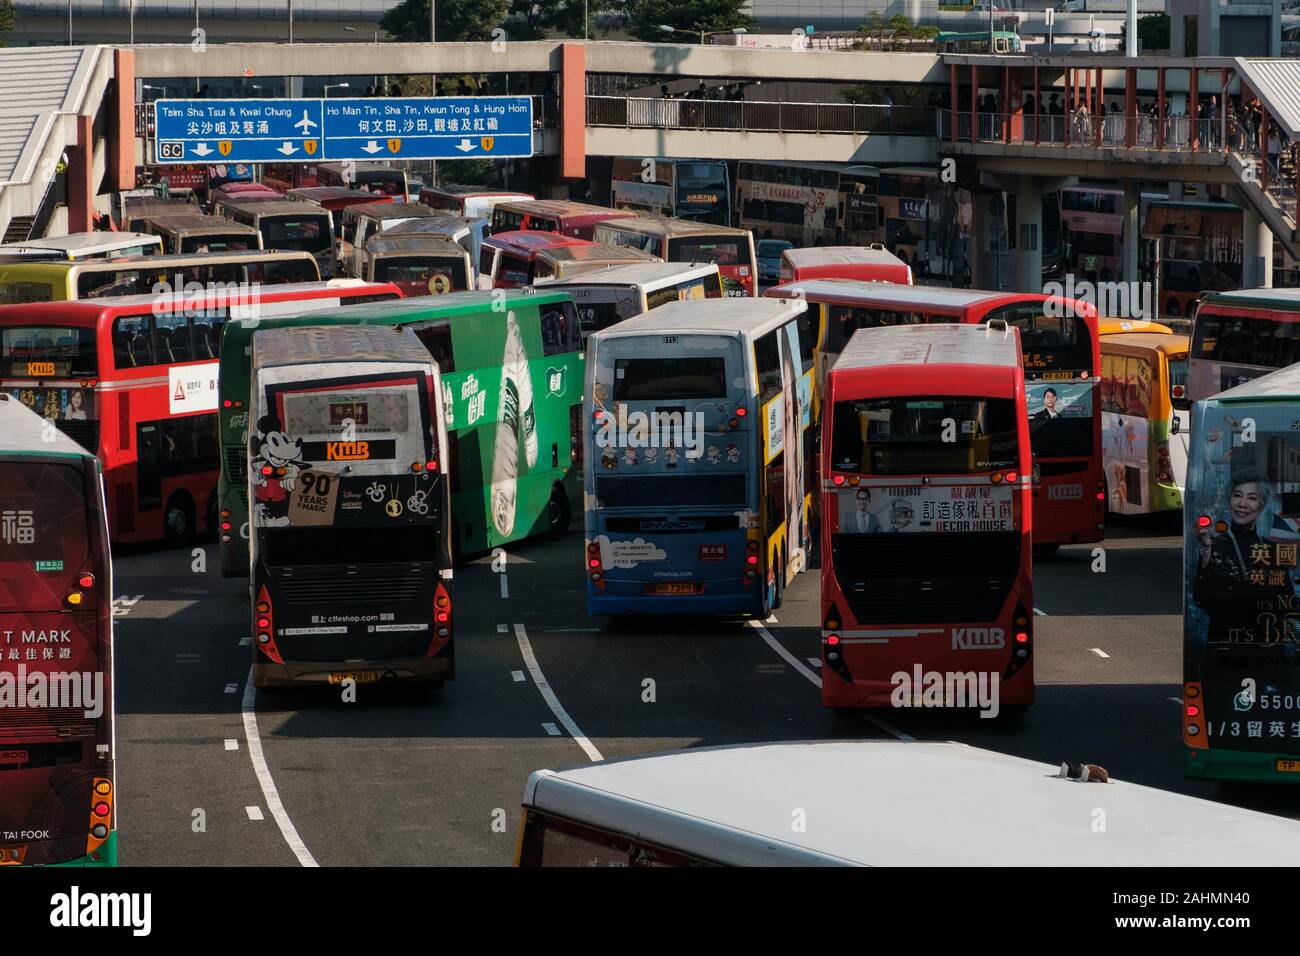 HongKong, china - November, 2019: Bus traffic jam on highway in Hung Hom cross harbor tunnel during 2019 Hong Kong protests Stock Photo